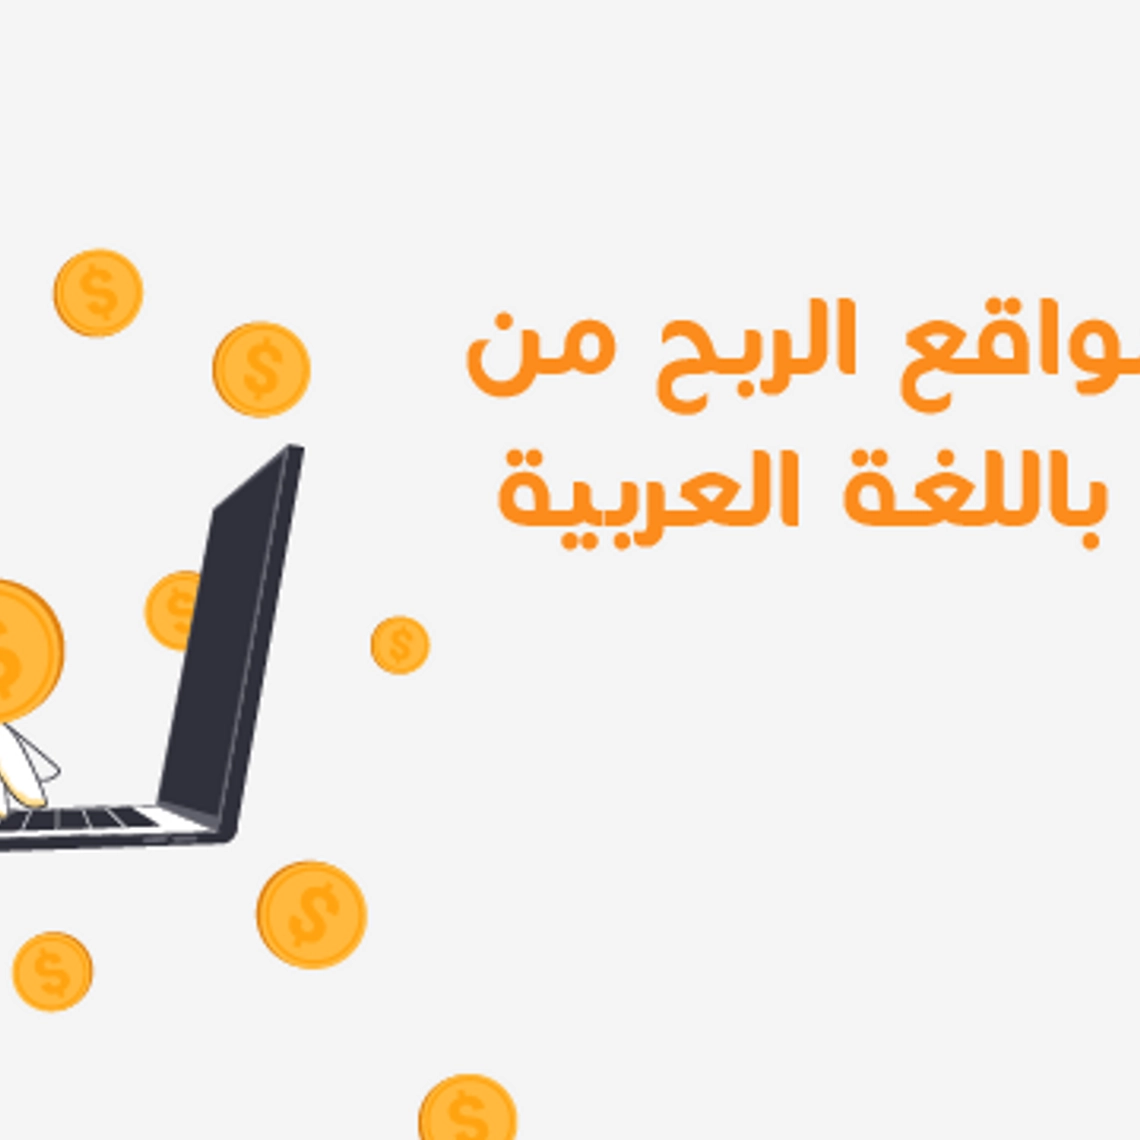 أفضل مواقع الربح من الإنترنت باللغة العربية والأكثر شهرة